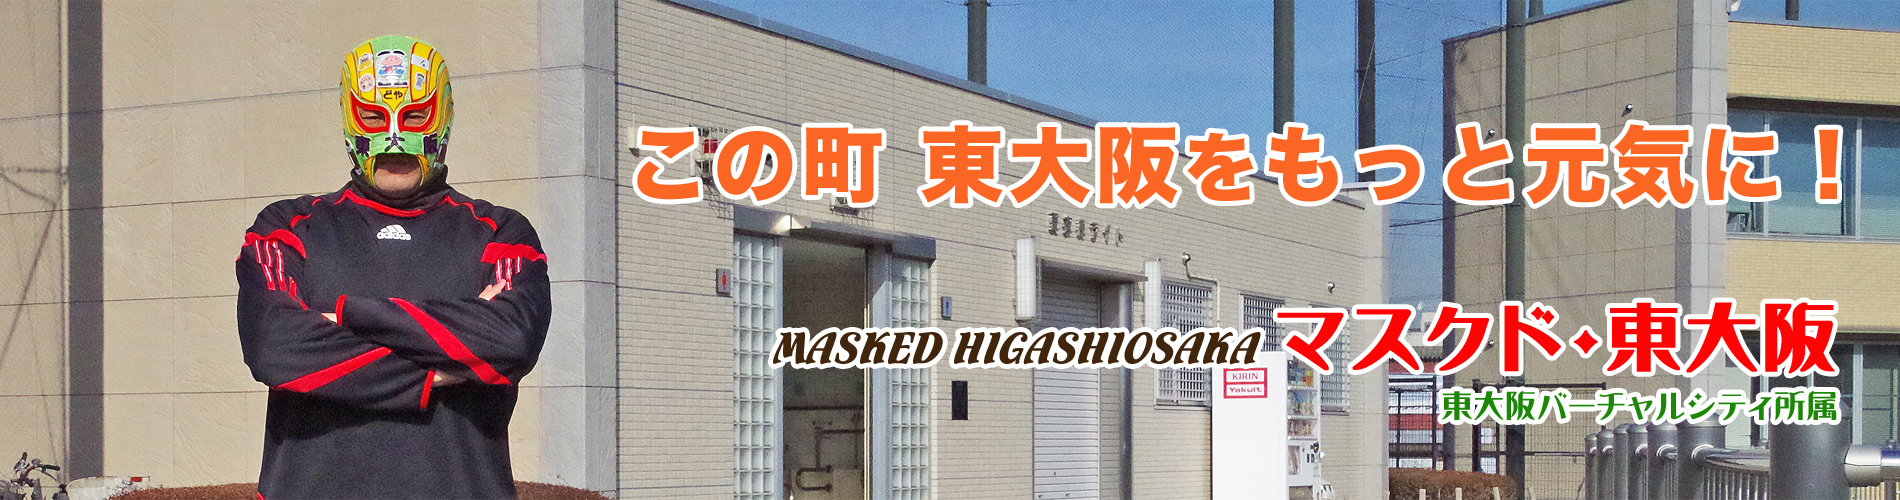 「マスクド・東大阪」は東大阪の地域活性を使命とする試合をしない東大阪バーチャルシティ所属の覆面レスラーです。